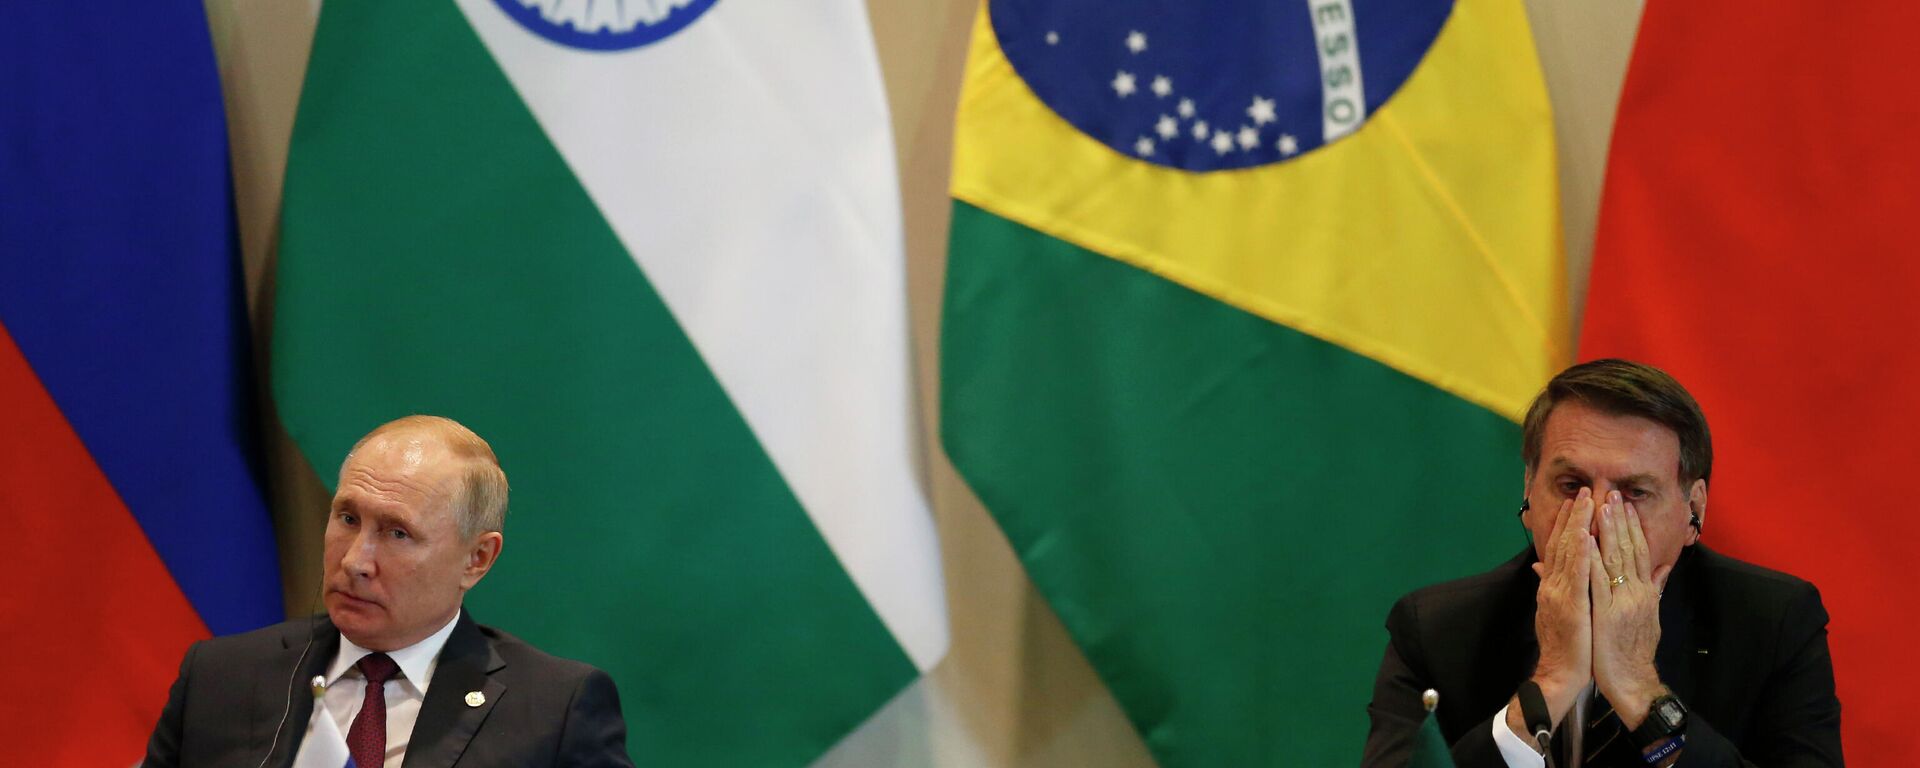 O presidente da Rússia, Vladimir Putin (à esquerda), e o presidente do Brasil, Jair Bolsonaro, durante o Diálogo dos Líderes com o Conselho Empresarial do BRICS e o Novo Banco de Desenvolvimento, no Palácio do Itamaraty, em Brasília, em 14 de novembro de 2019 (foto de arquivo) - Sputnik Brasil, 1920, 24.06.2022